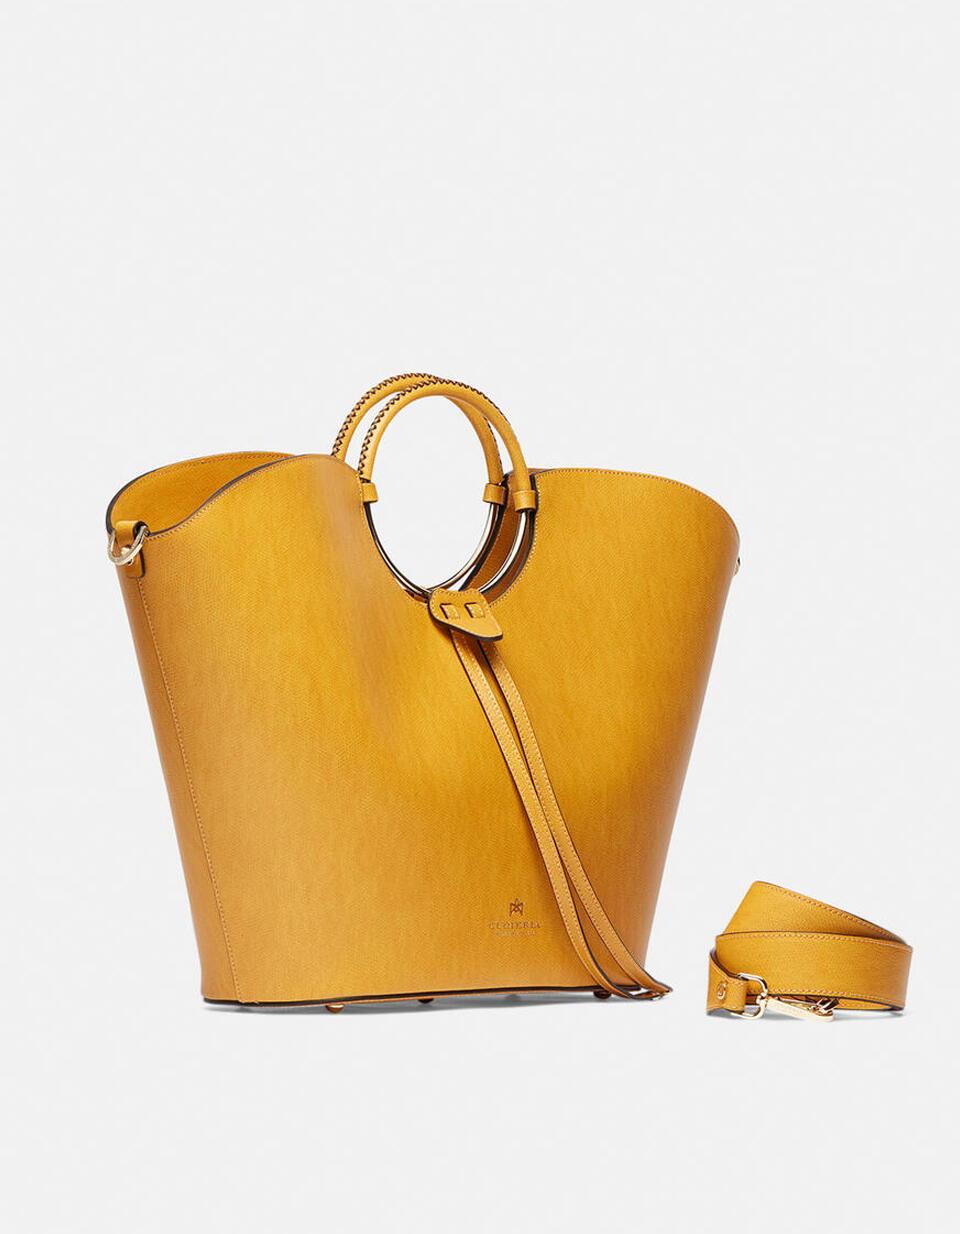 Oblò maxi bag in palmellato calf leather - TOTE BAG - WOMEN'S BAGS | bags GIALLO - TOTE BAG - WOMEN'S BAGS | bagsCuoieria Fiorentina